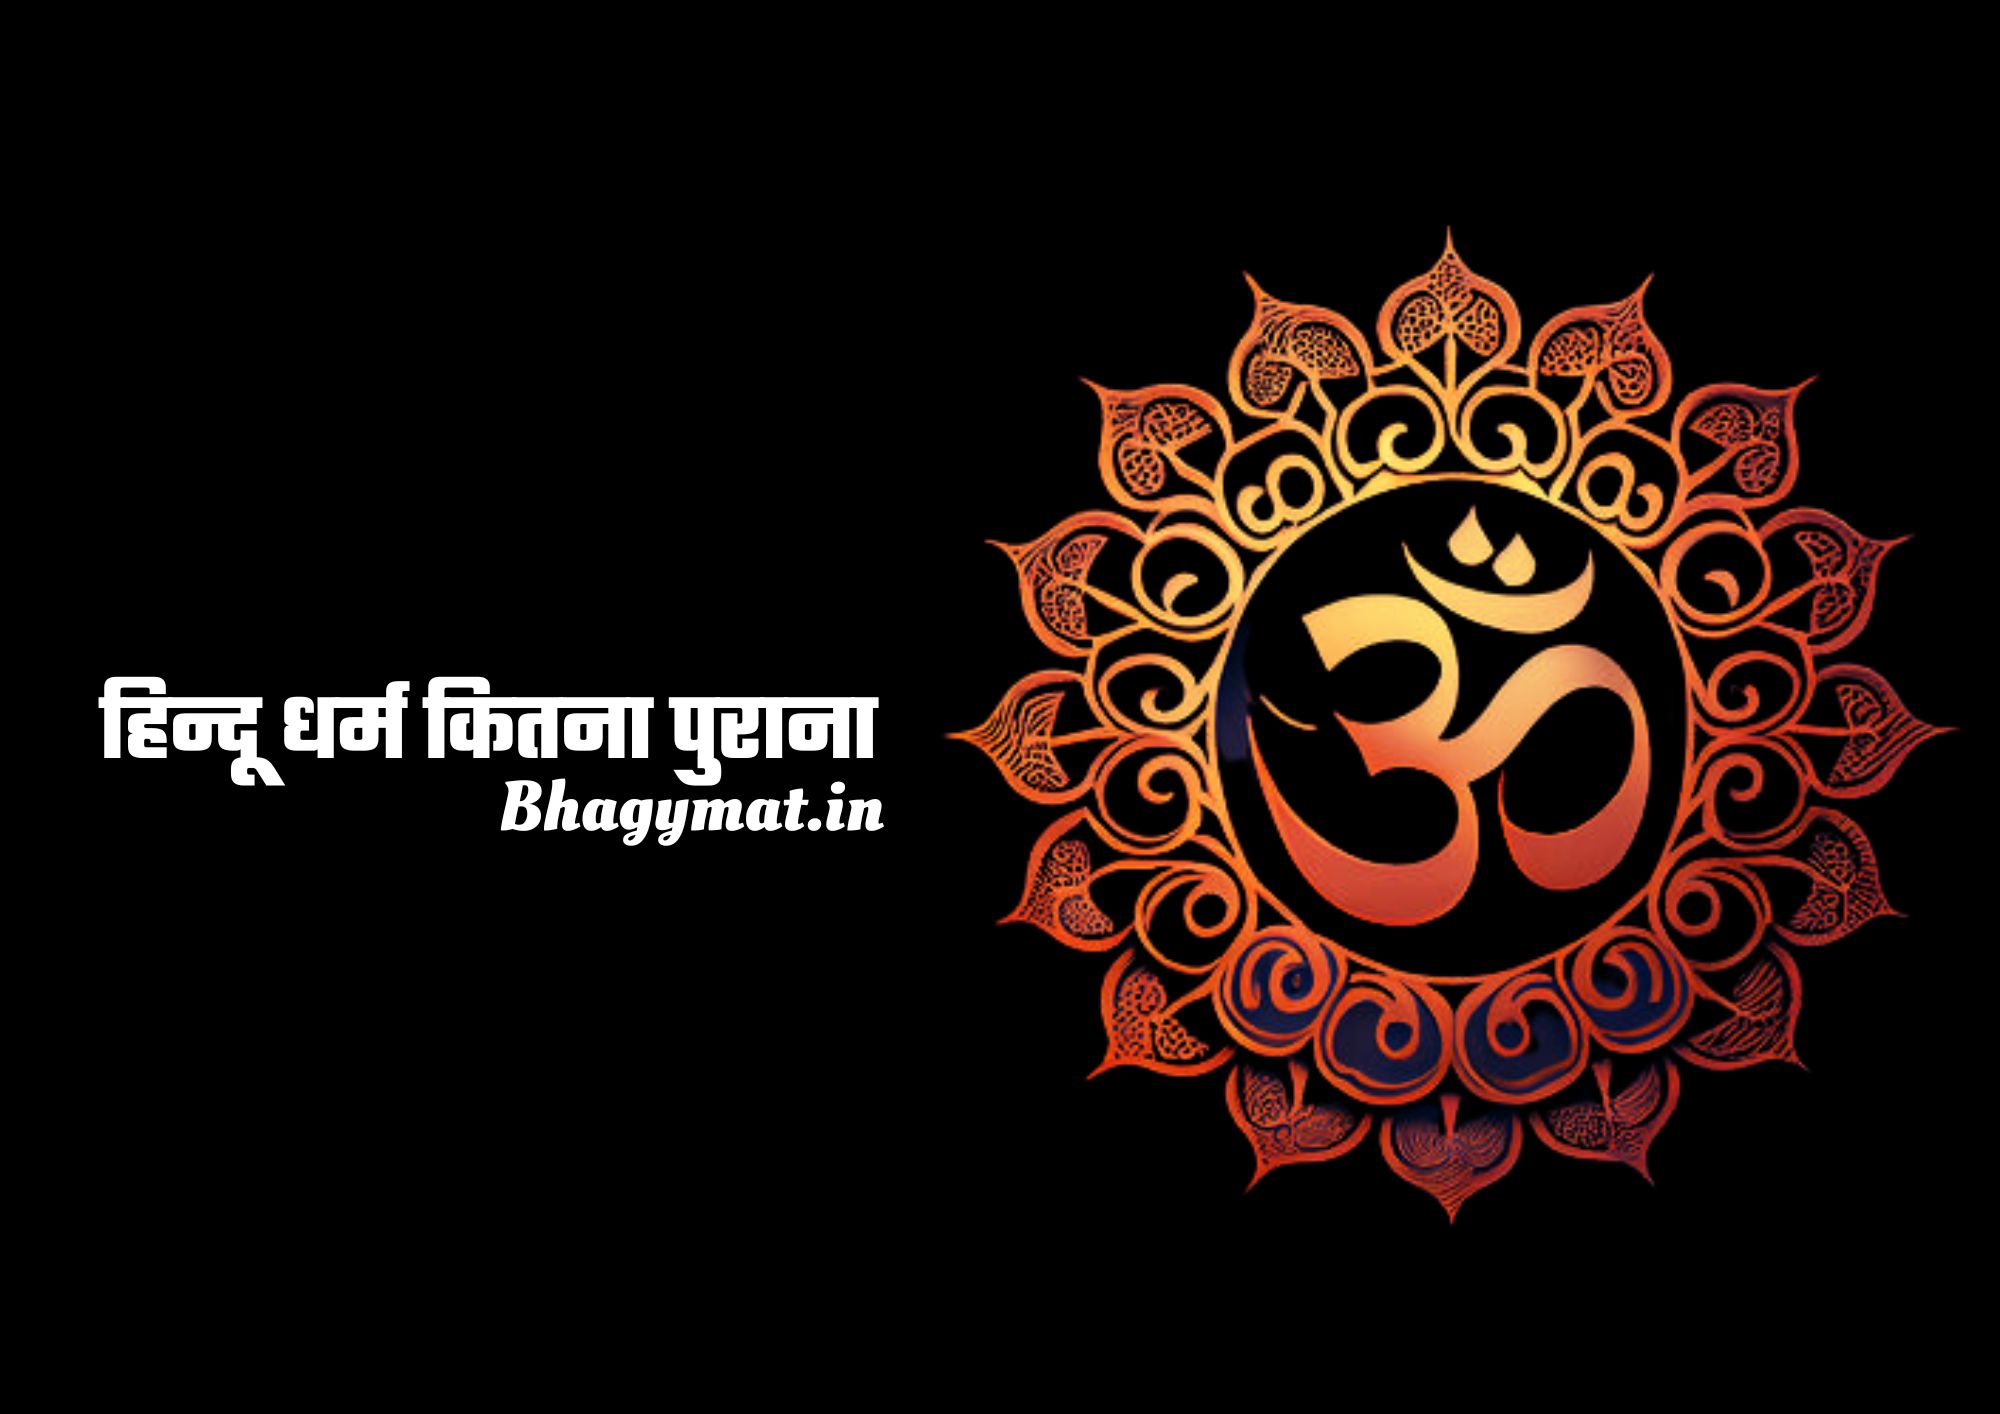 हिन्दू धर्म कितना पुराना है, सनातन धर्म कितना पुराना है - Sanatan Dharma Kitna Purana Hai - Hindu Dharm Kitna Purana Hai